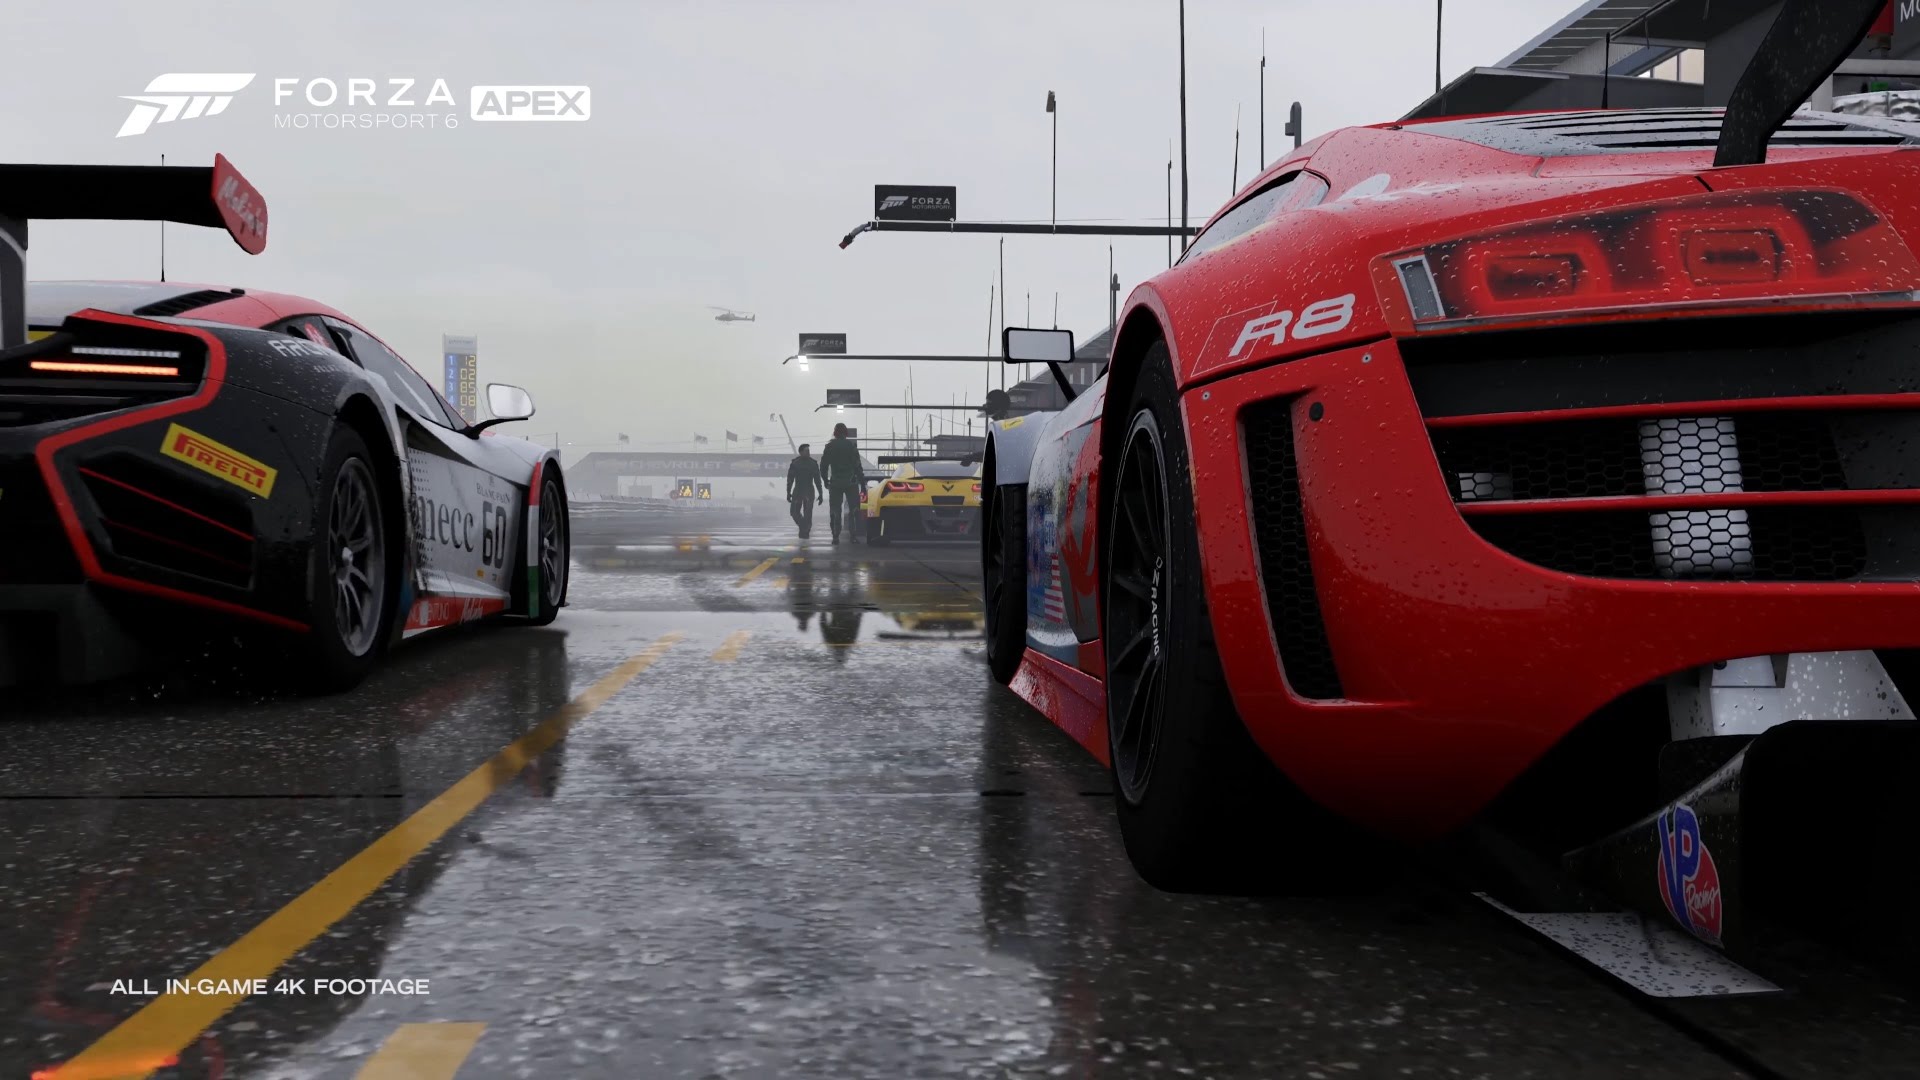 Популярные заставки и фоны Forza Motorsport 6: Апекс на компьютер